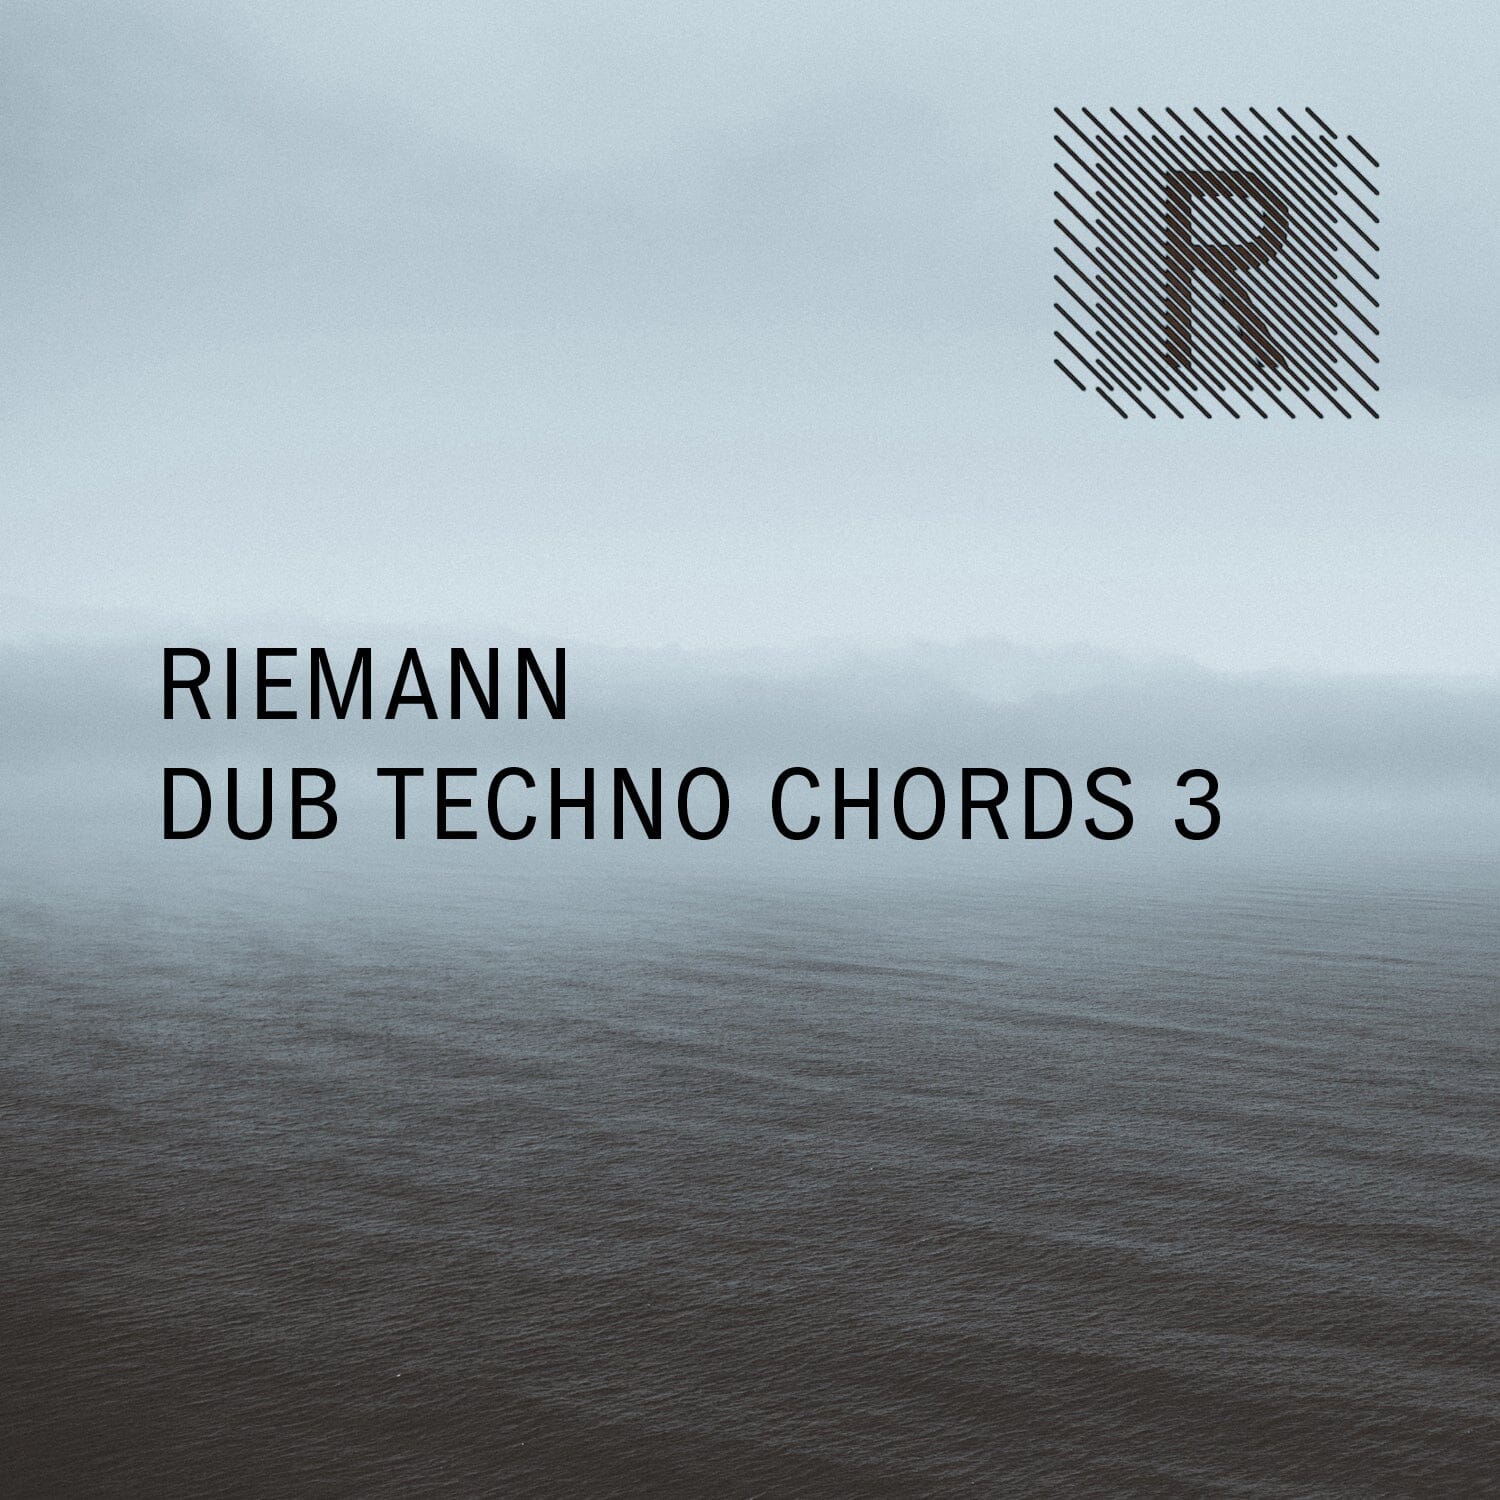 Riemann Dub Techno Chords 3 - Tech House (Oneshots - Loops) Sample Pack Riemann Kollektion